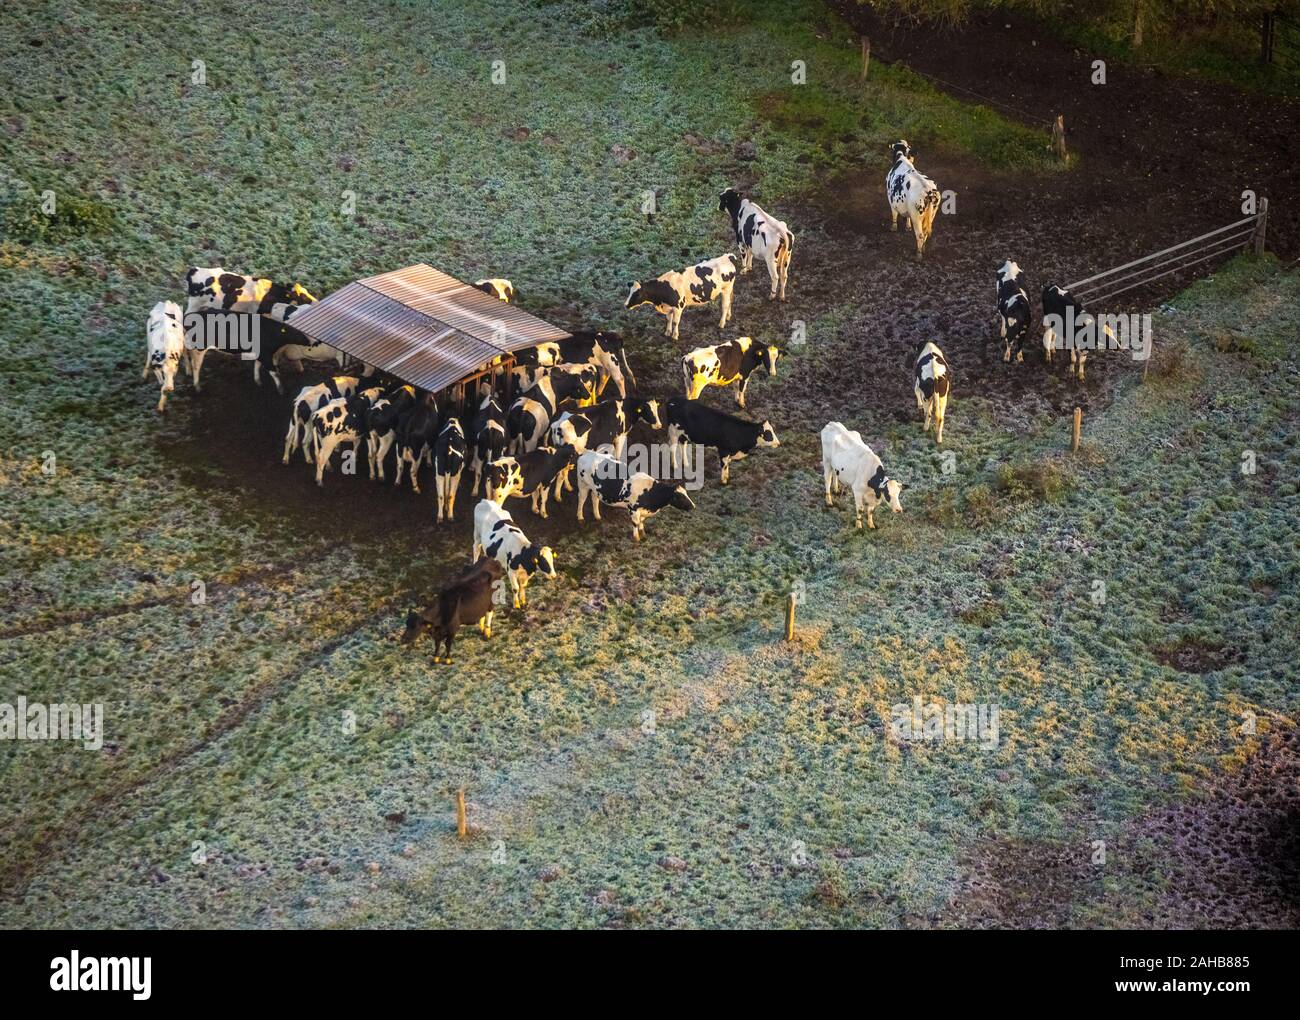 Foto aerea, mucche del pascolo in Heessen am Futter trogolo, brina, mattina impressione, Hamm, la zona della Ruhr, Renania settentrionale-Vestfalia, Germania, DE, UE Foto Stock